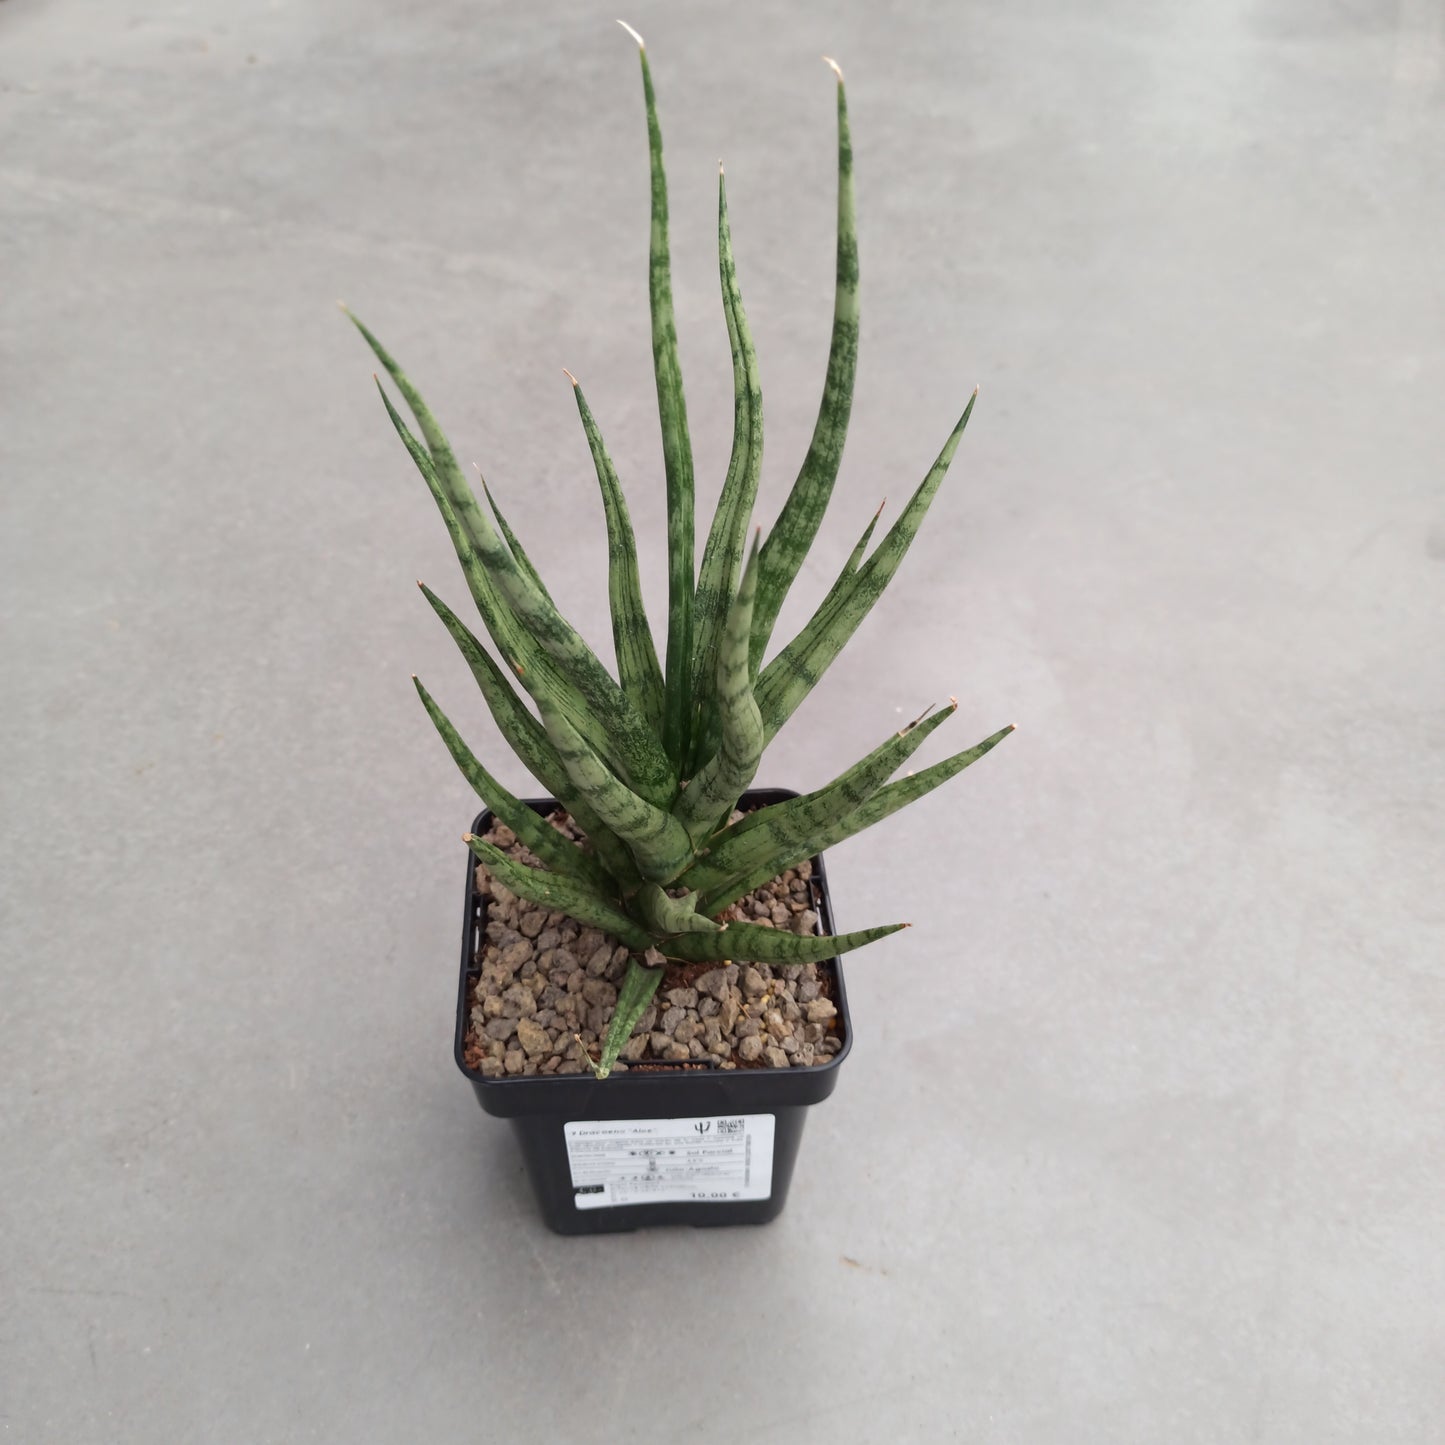 Dracaena (Sansevieria) 'Aloe' 'S' and 'M'